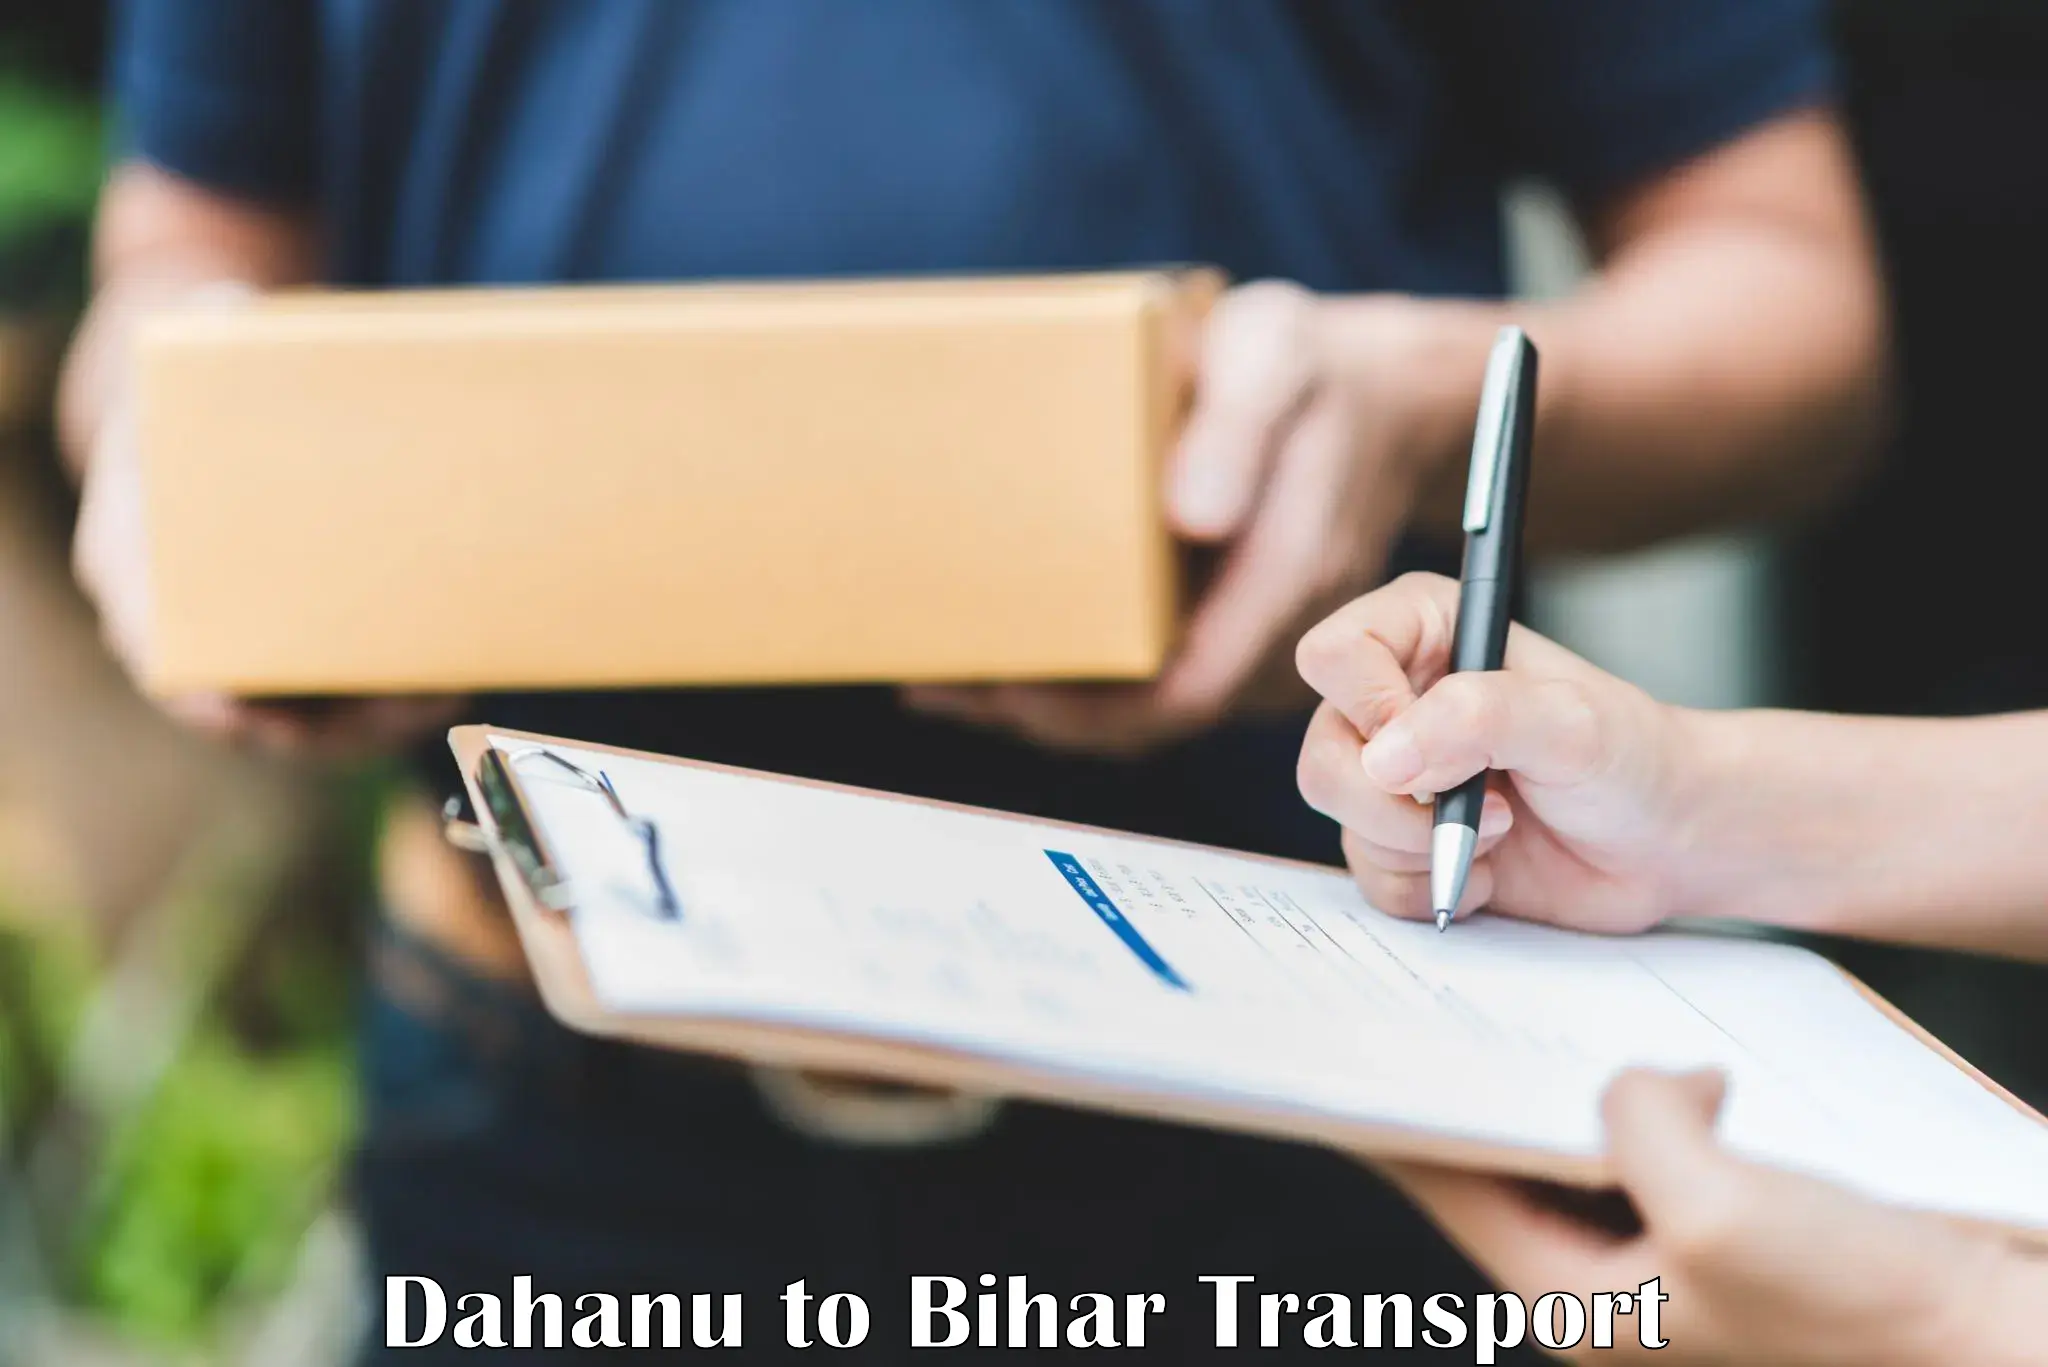 Air freight transport services Dahanu to Buxar